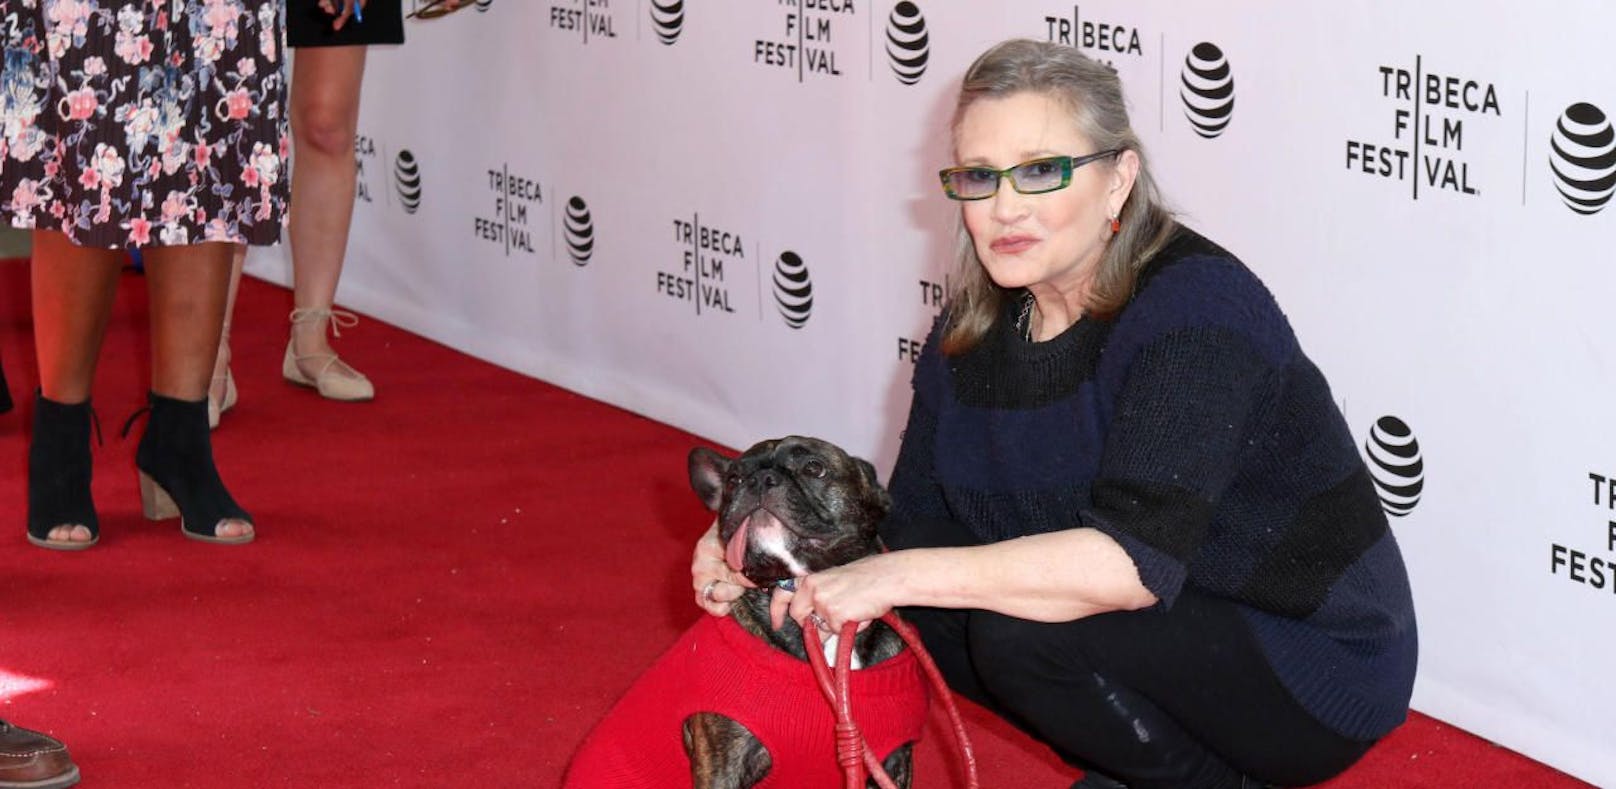 Hund von Carrie Fisher wird zum Star Wars Alien